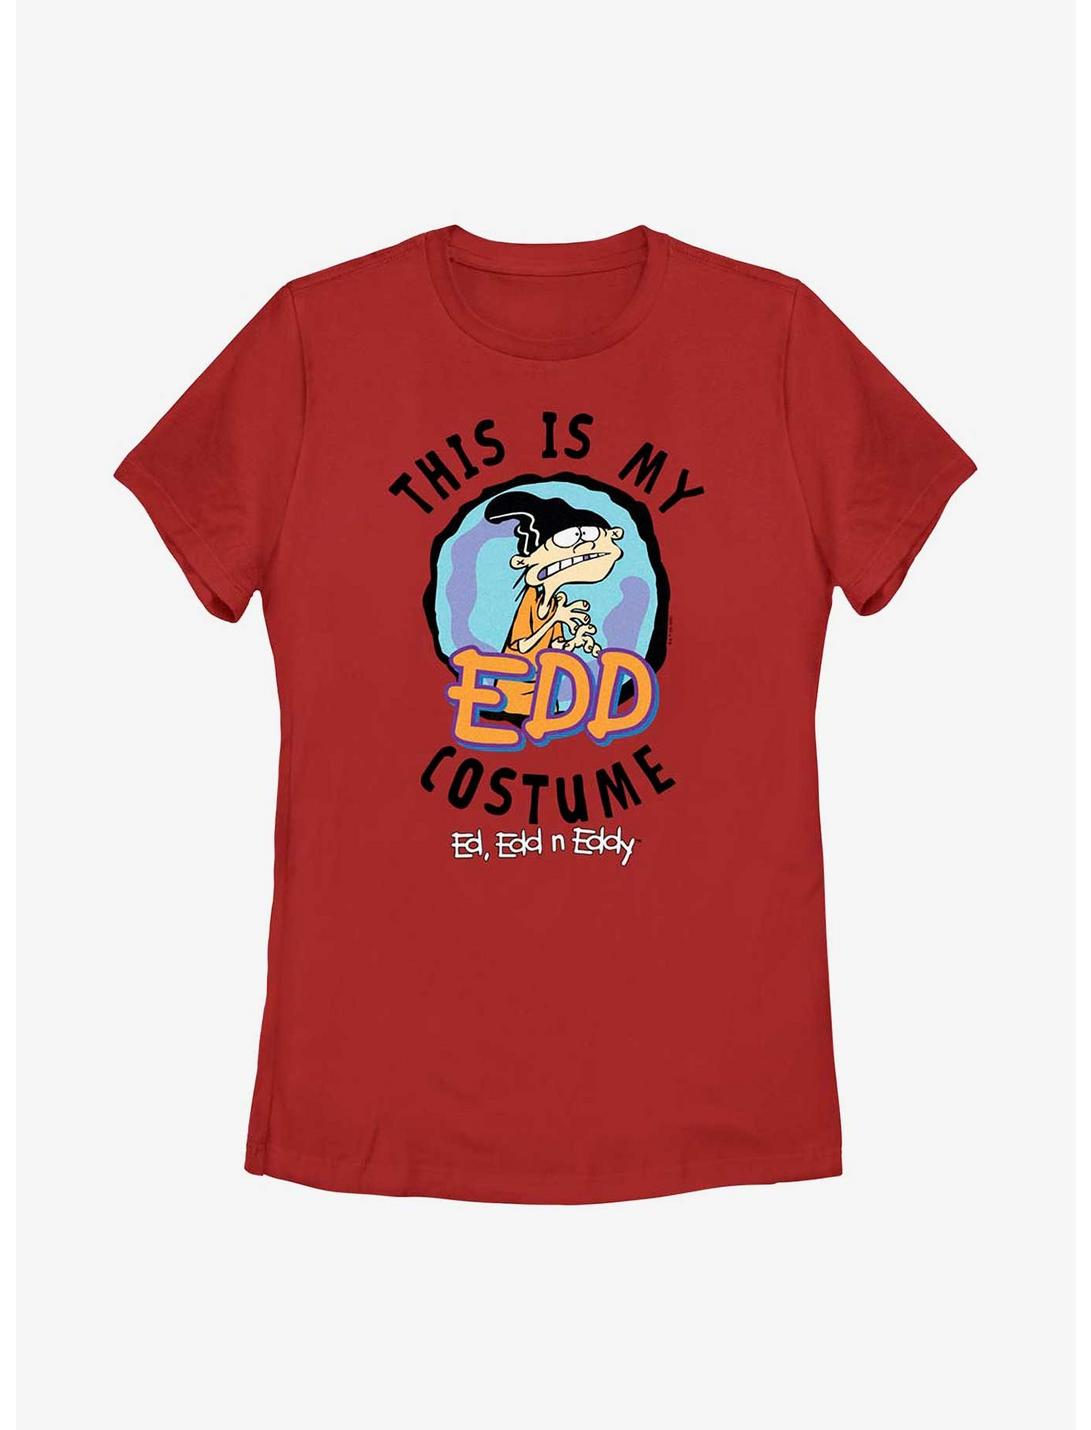 Ed, Edd, & Eddy My Edd Costume Cosplay Womens T-Shirt, RED, hi-res